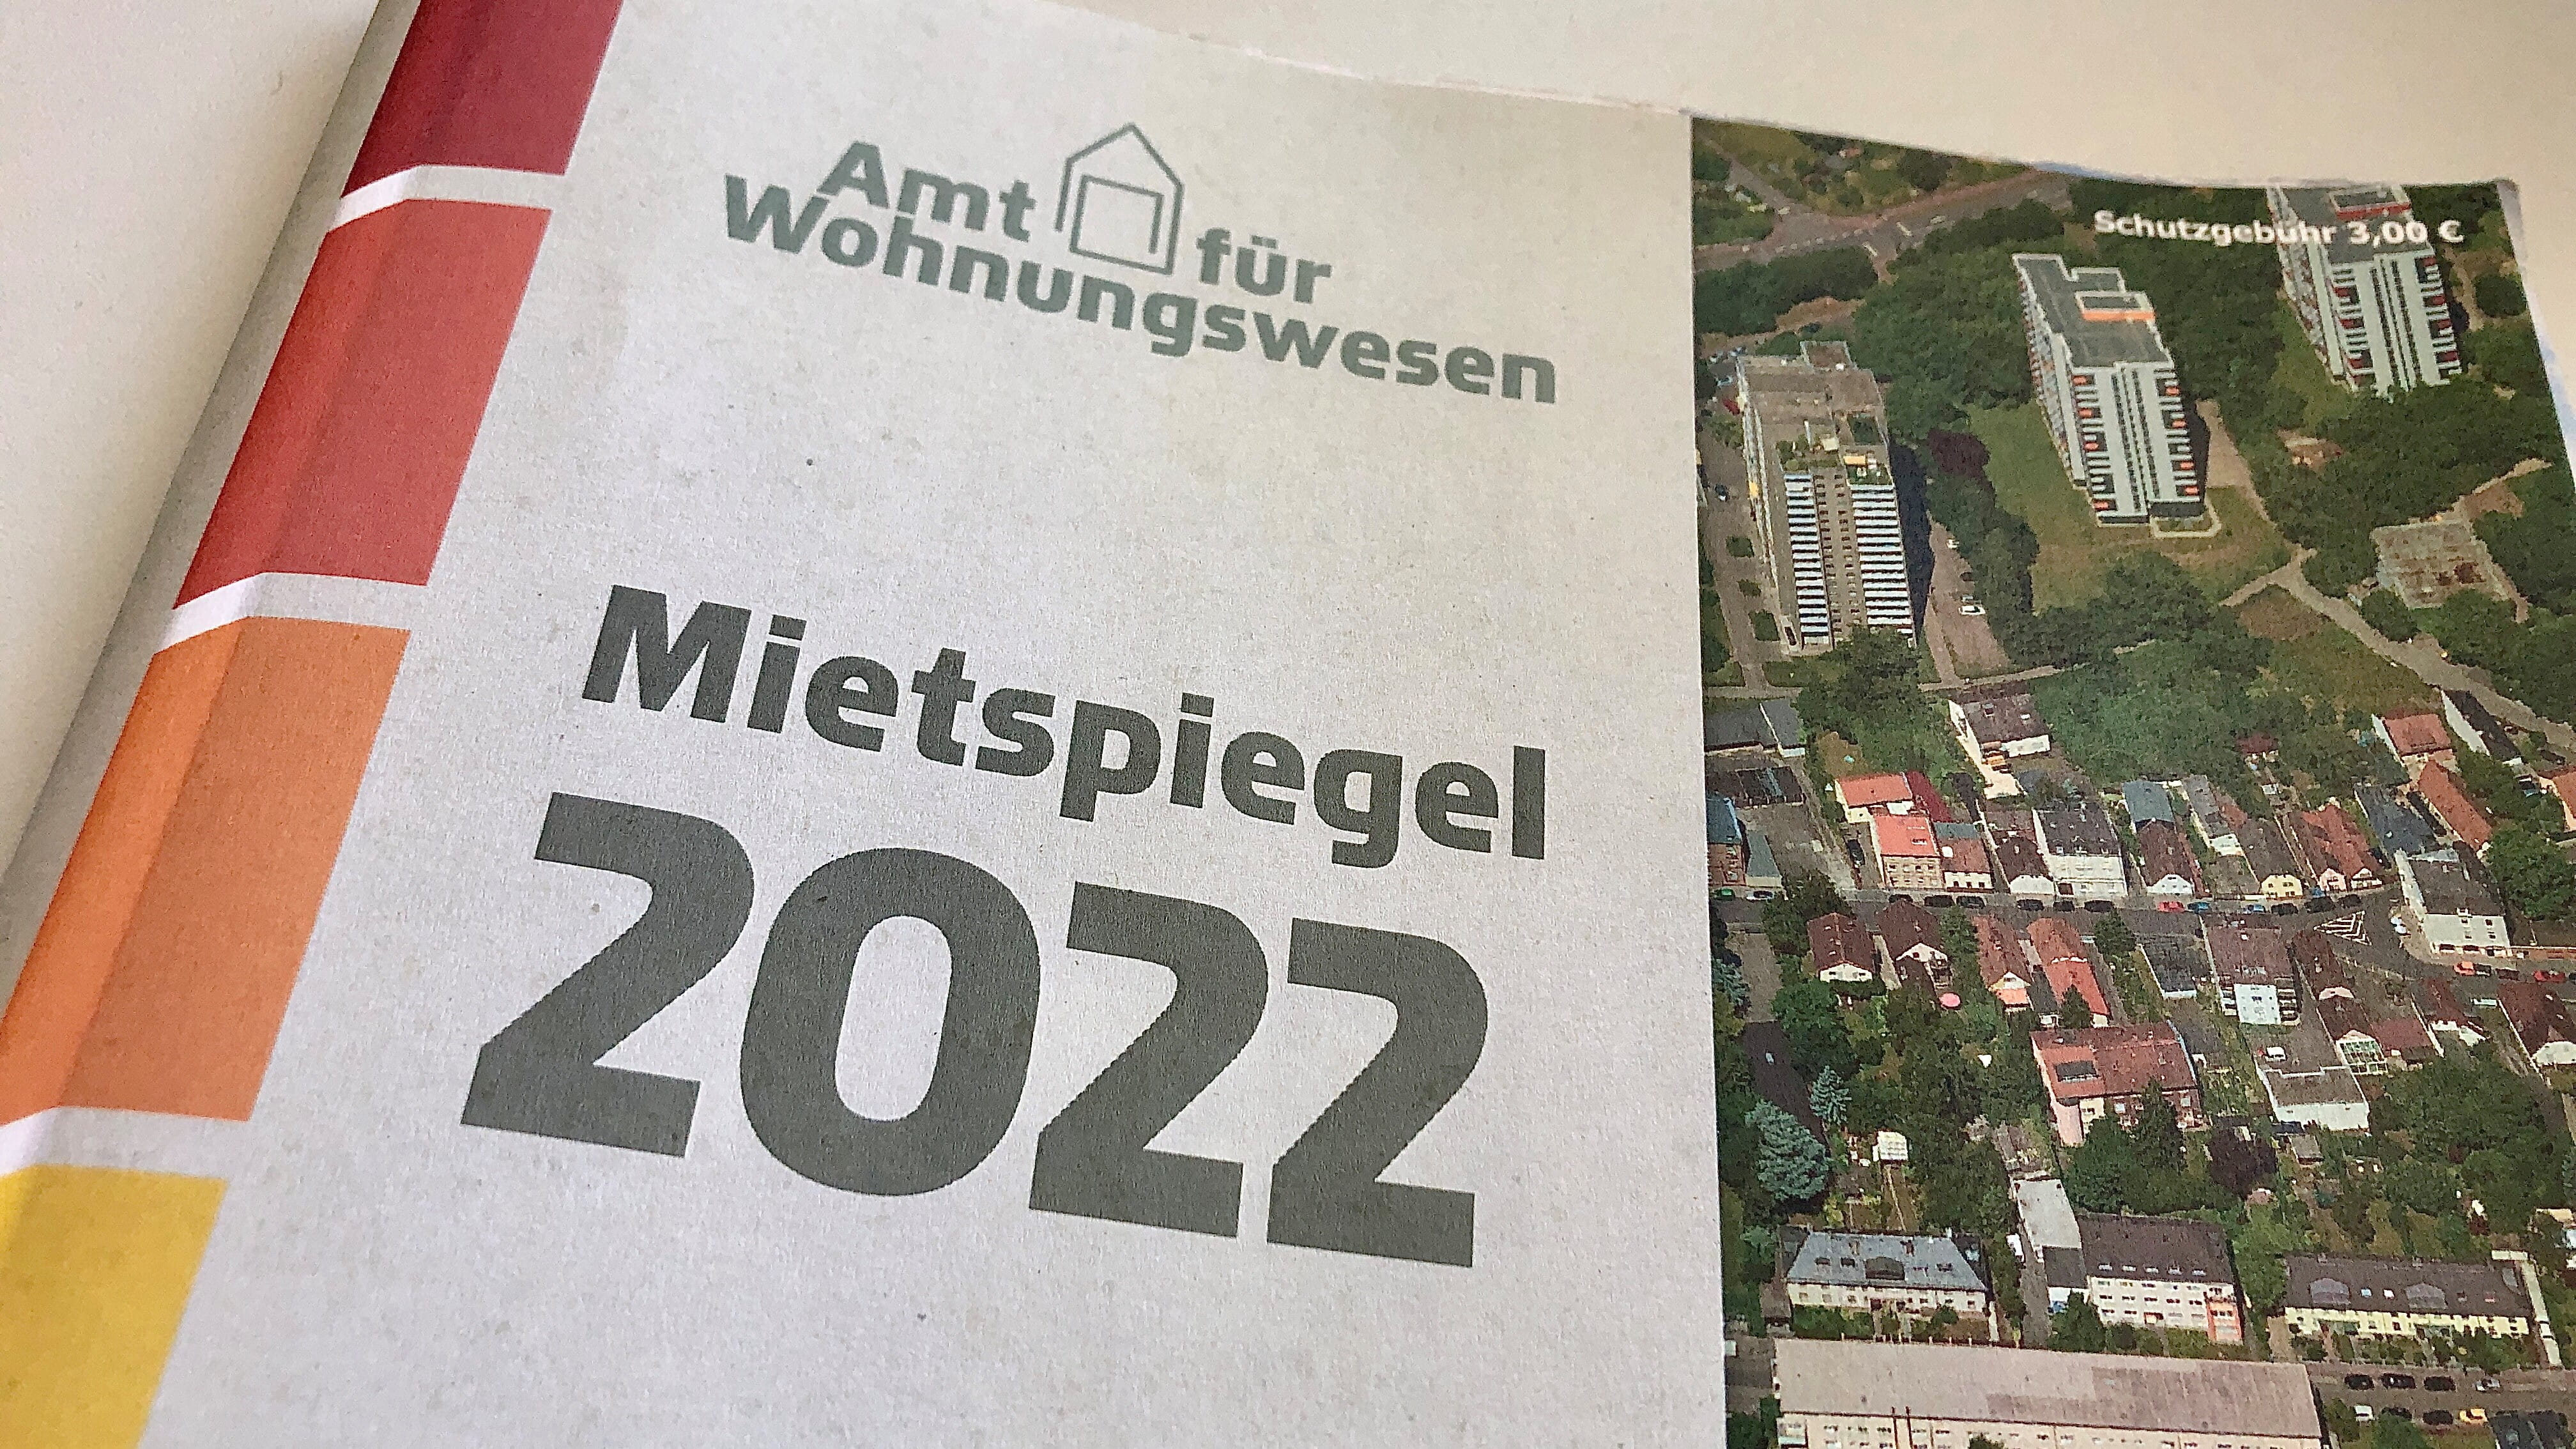 Zu lesen sind die Schriftzüge "Amt für Wohnungswesen" und "Mietspiegel 2022" auf dem Umschlag-Blatt der Mietspiegel-Broschüre.